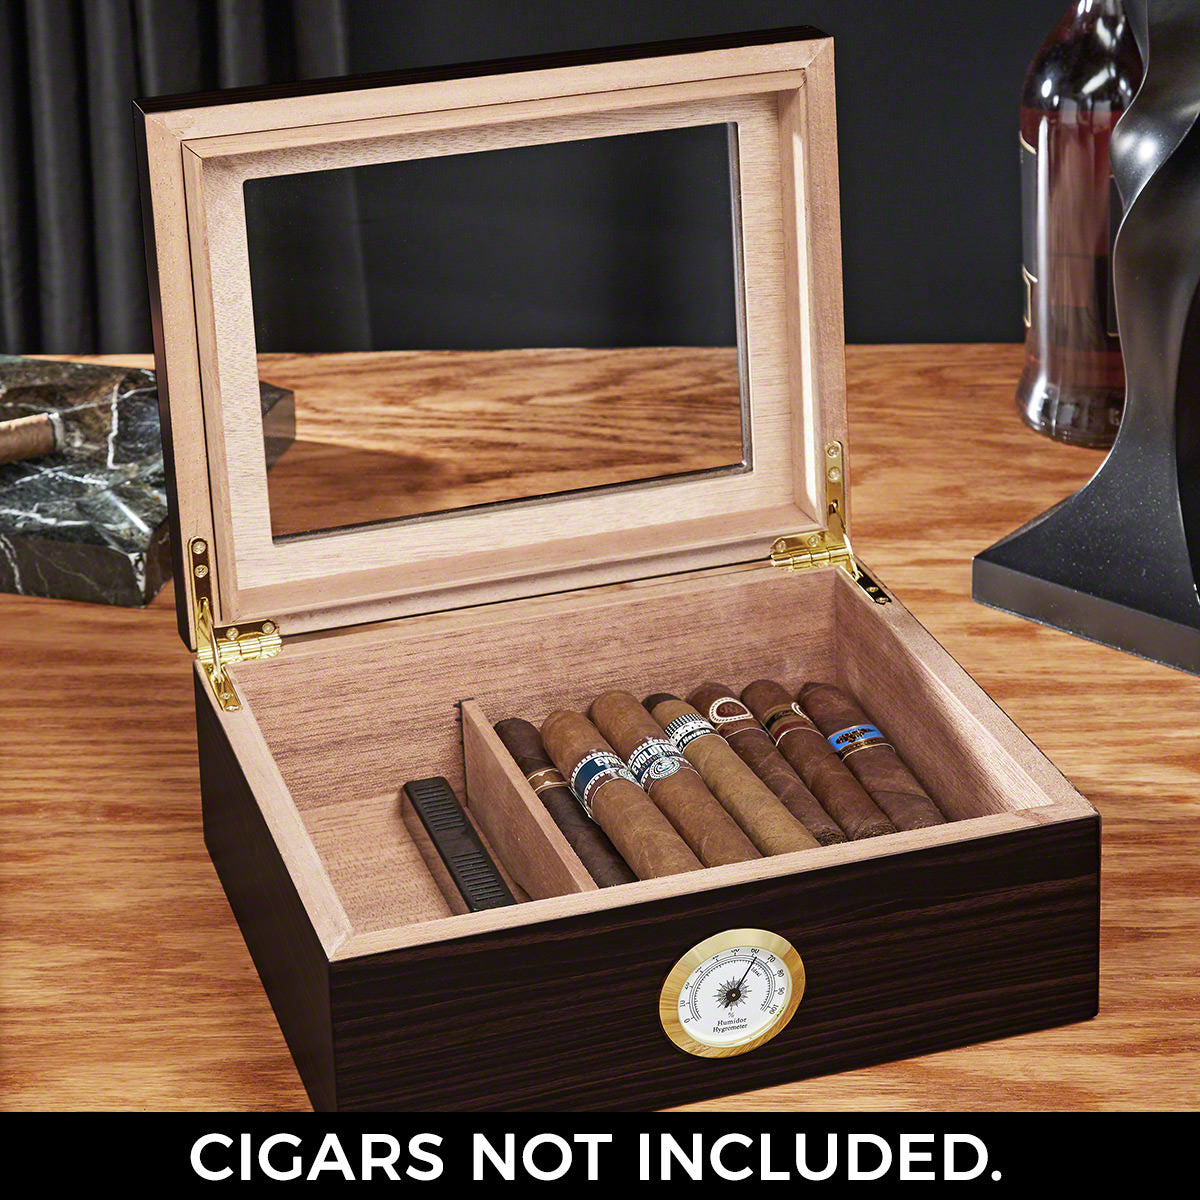 Cigar Aficionado Custom Wood Cigar Humidor with Hygrometer - Espresso Brown Cedar Lined